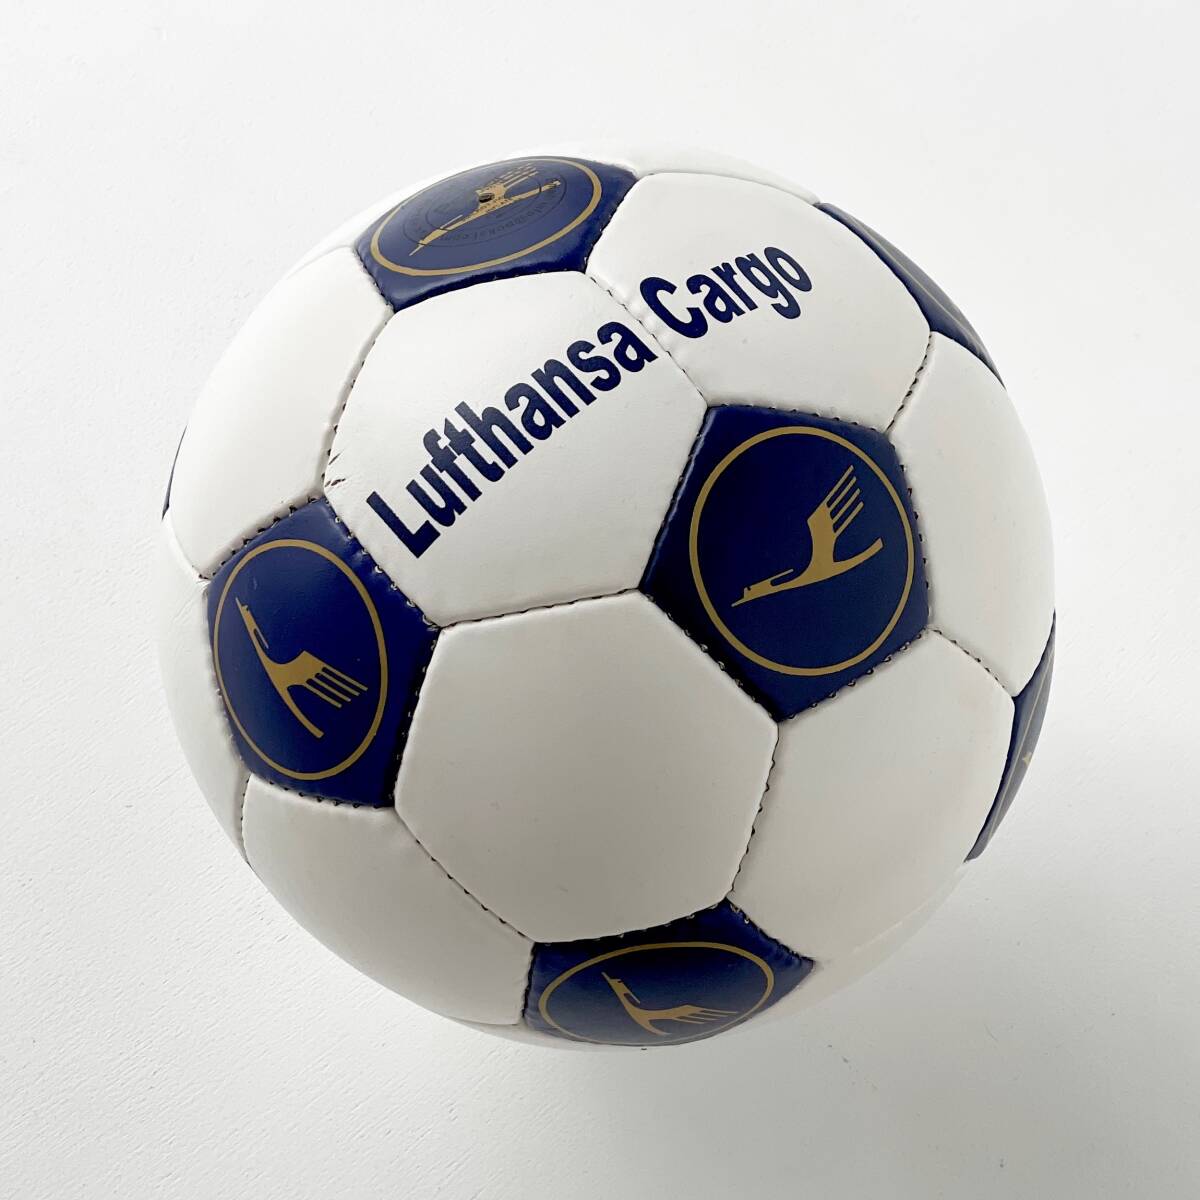 Lufthansa ルフトハンザ カーゴ サッカーボール フットボール レザー 本革 未使用品 DFBポカール #02_画像7